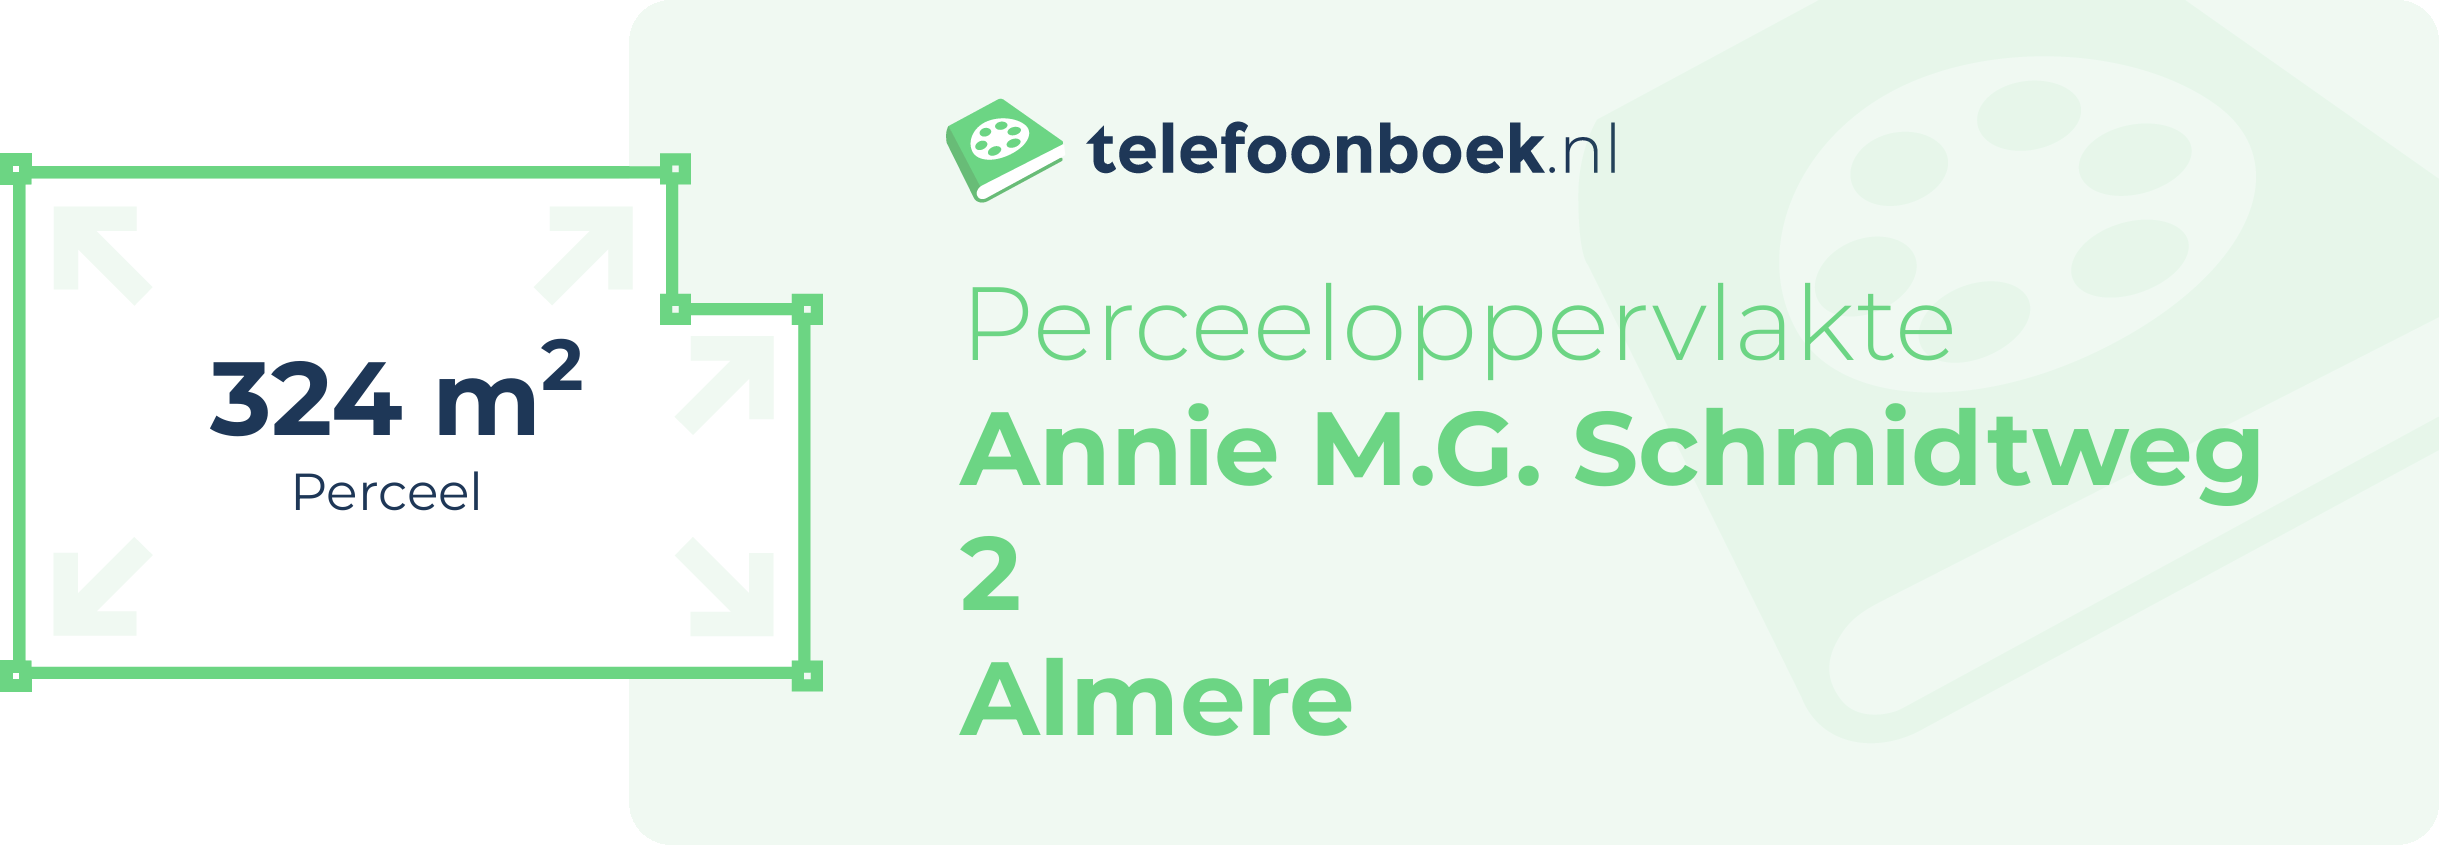 Perceeloppervlakte Annie M.G. Schmidtweg 2 Almere